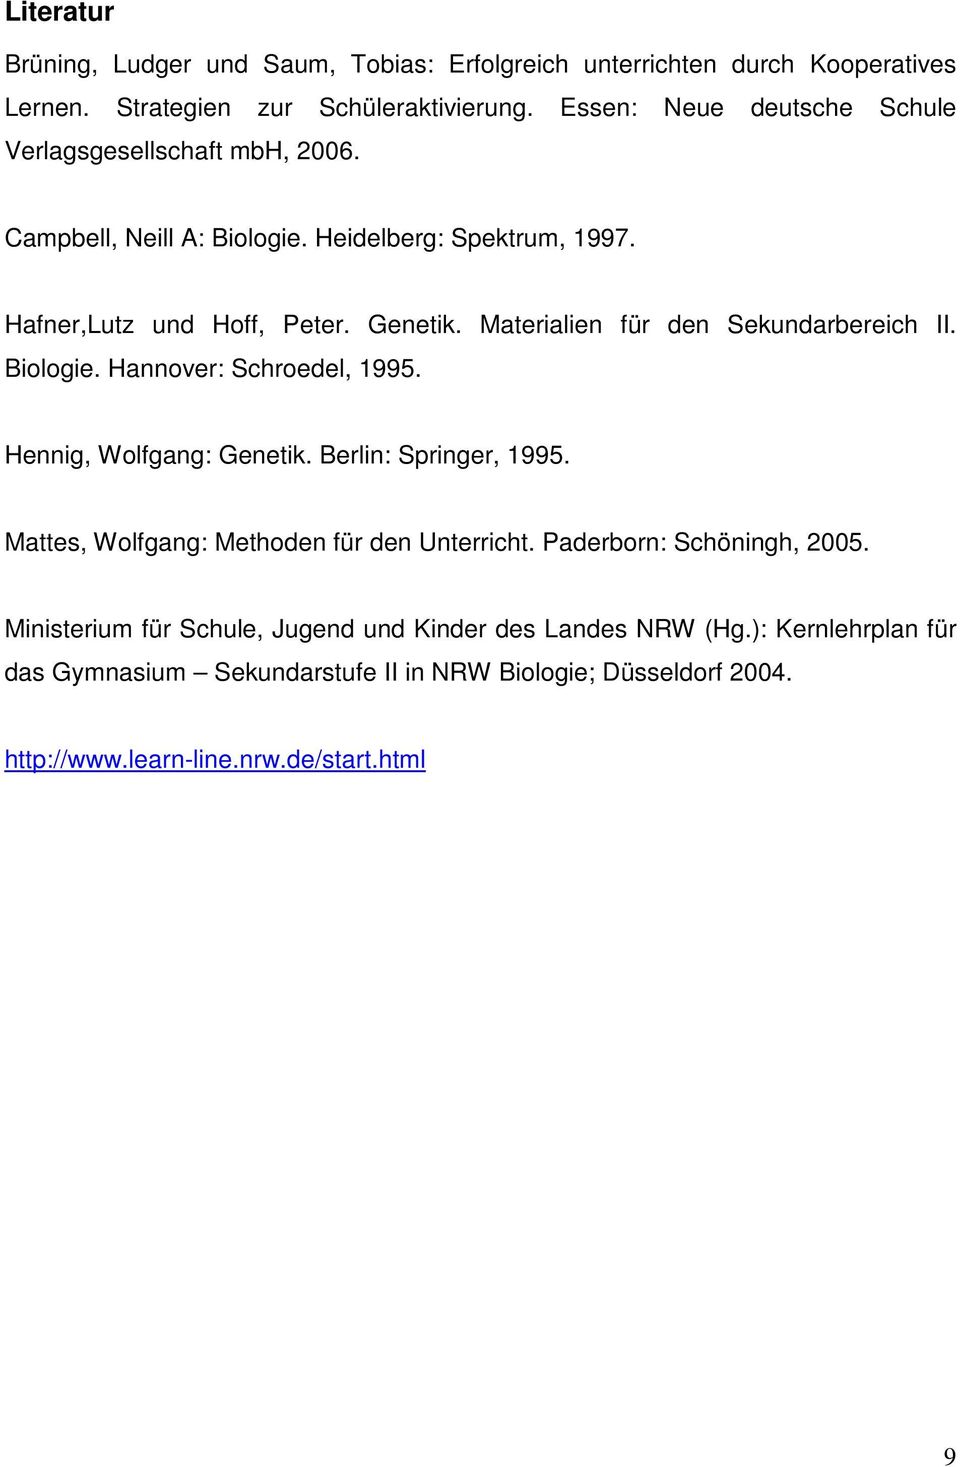 Materialien für den Sekundarbereich II. Biologie. Hannover: Schroedel, 1995. Hennig, Wolfgang: Genetik. Berlin: Springer, 1995.